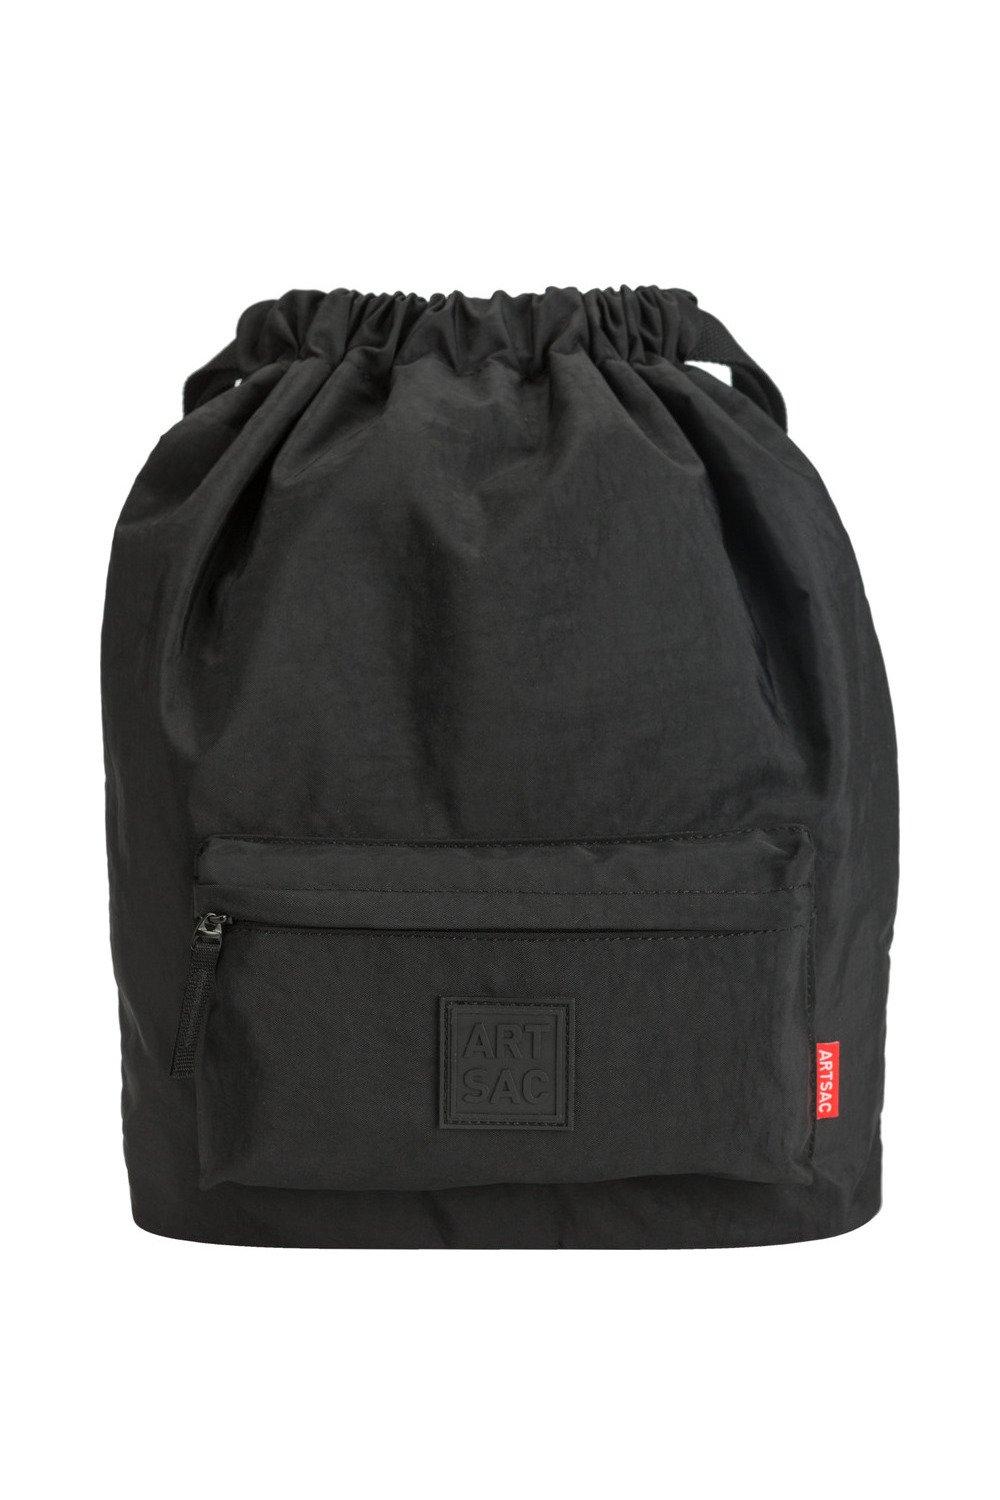 Рюкзак Tilley на шнурке Artsac, черный повседневный сетчатый рюкзак на шнурке черный